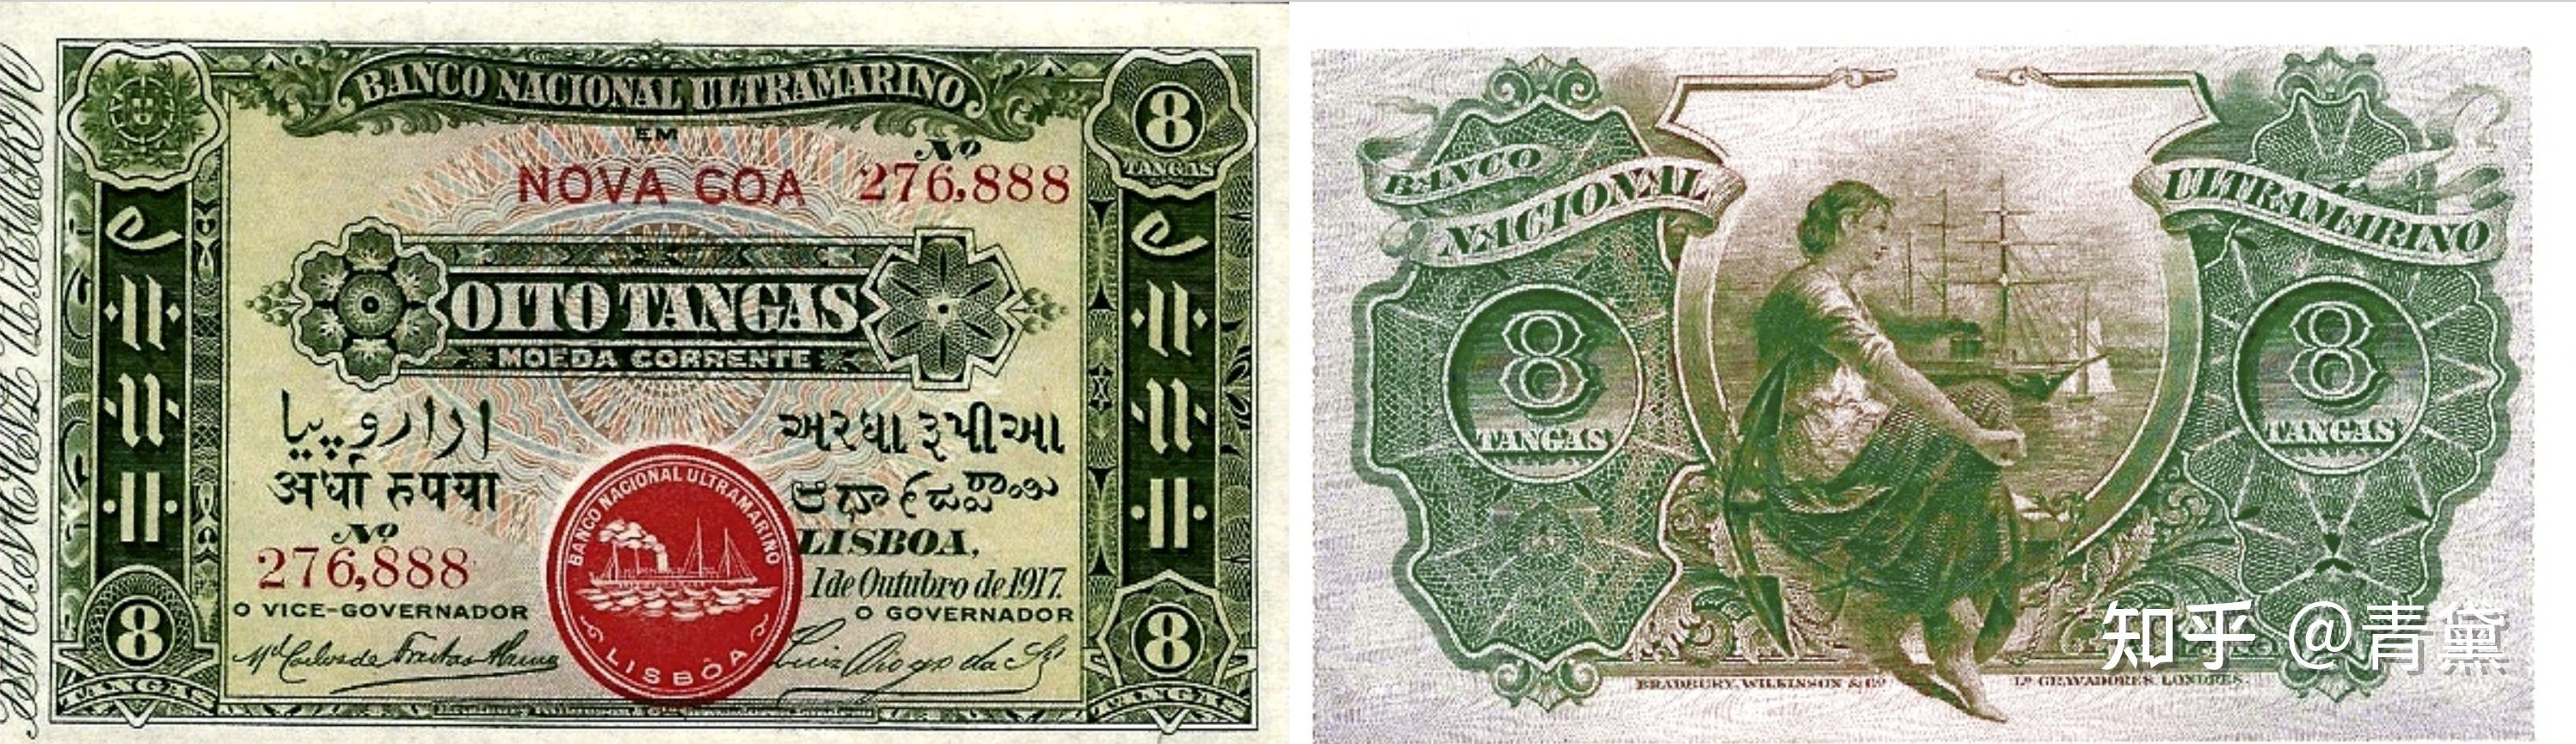 近现代印度纸币简史（下篇：共和国时期） - 知乎